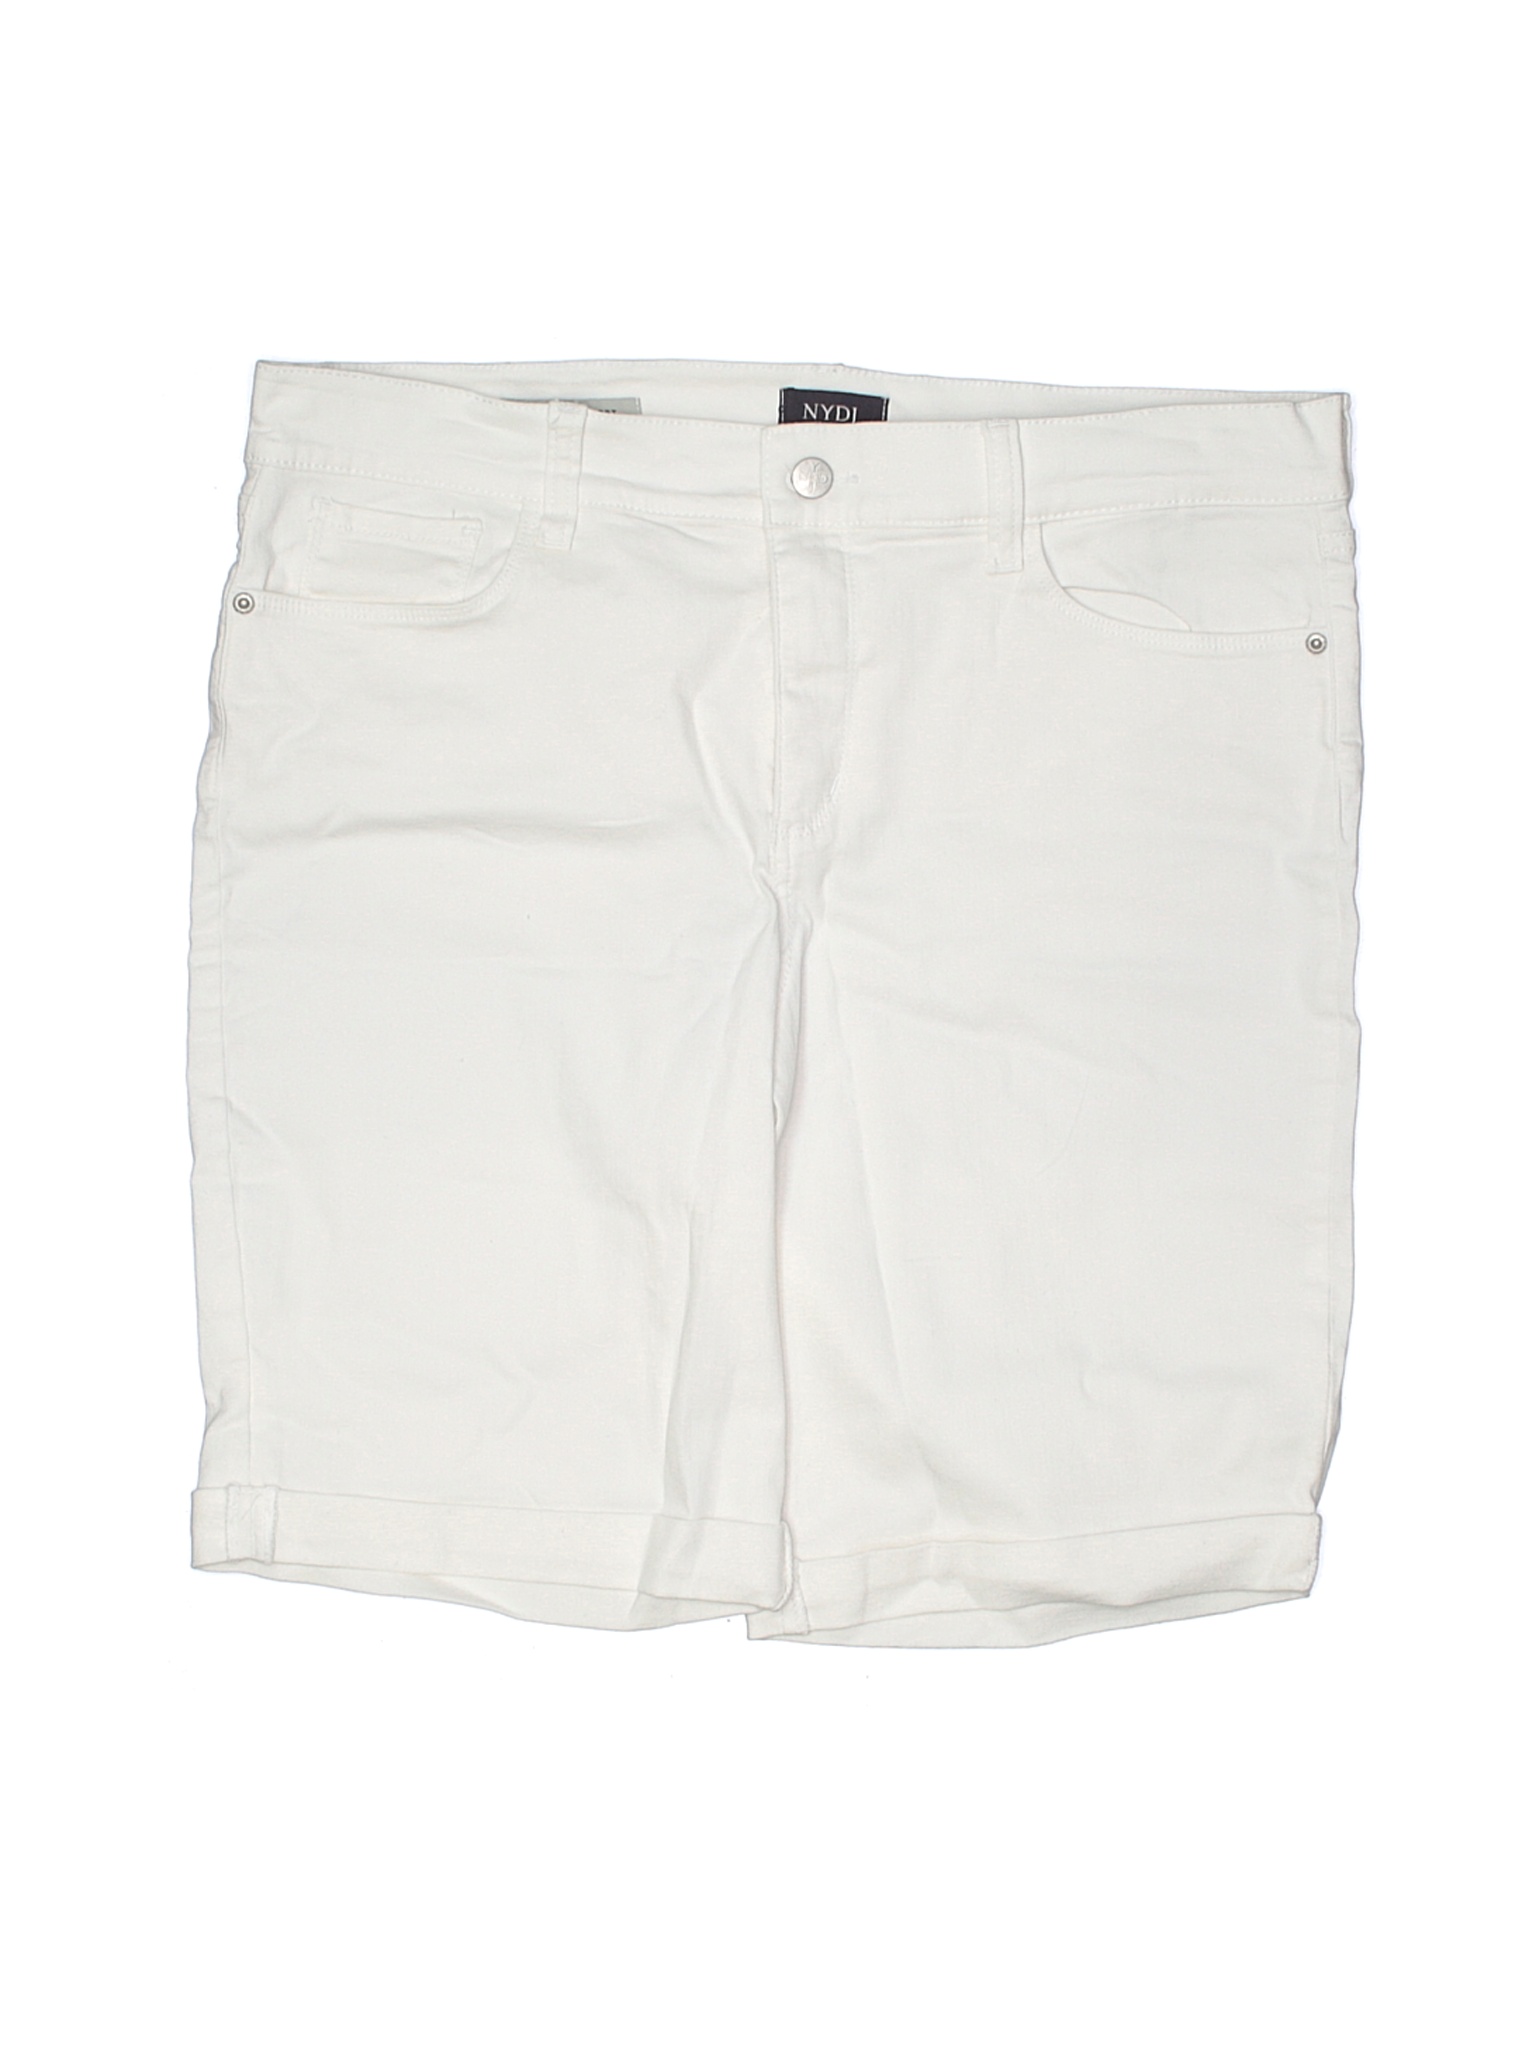 NYDJ Women White Denim Shorts 14 | eBay